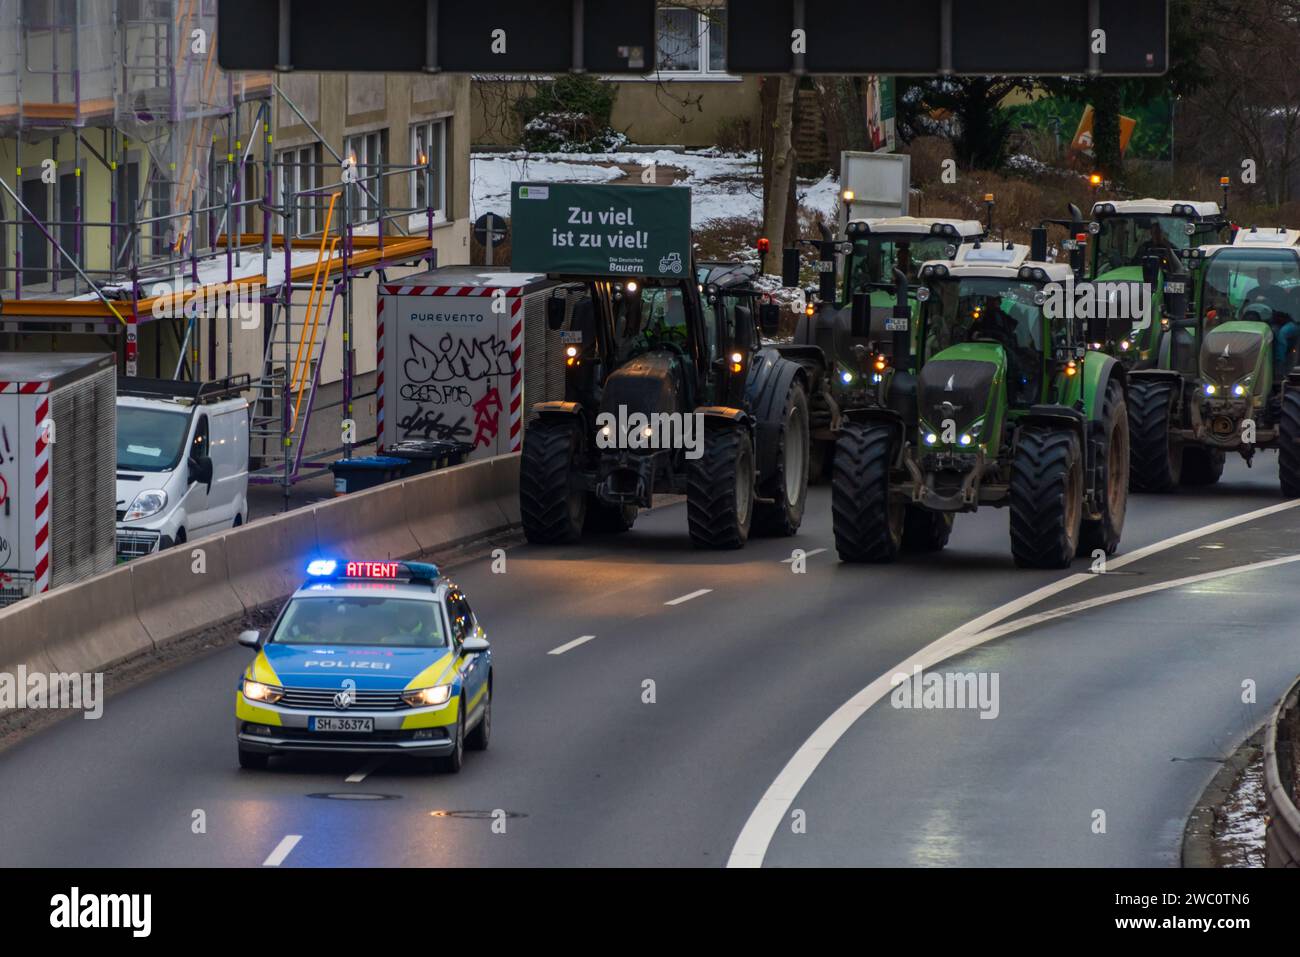 Kiel, 12.01.2023 Protestaktion der Bauern gegen die Streichung von Subventionen der Ampelregierung im Agrarbereich  mit einer Traktoren-Demo Stock Photo